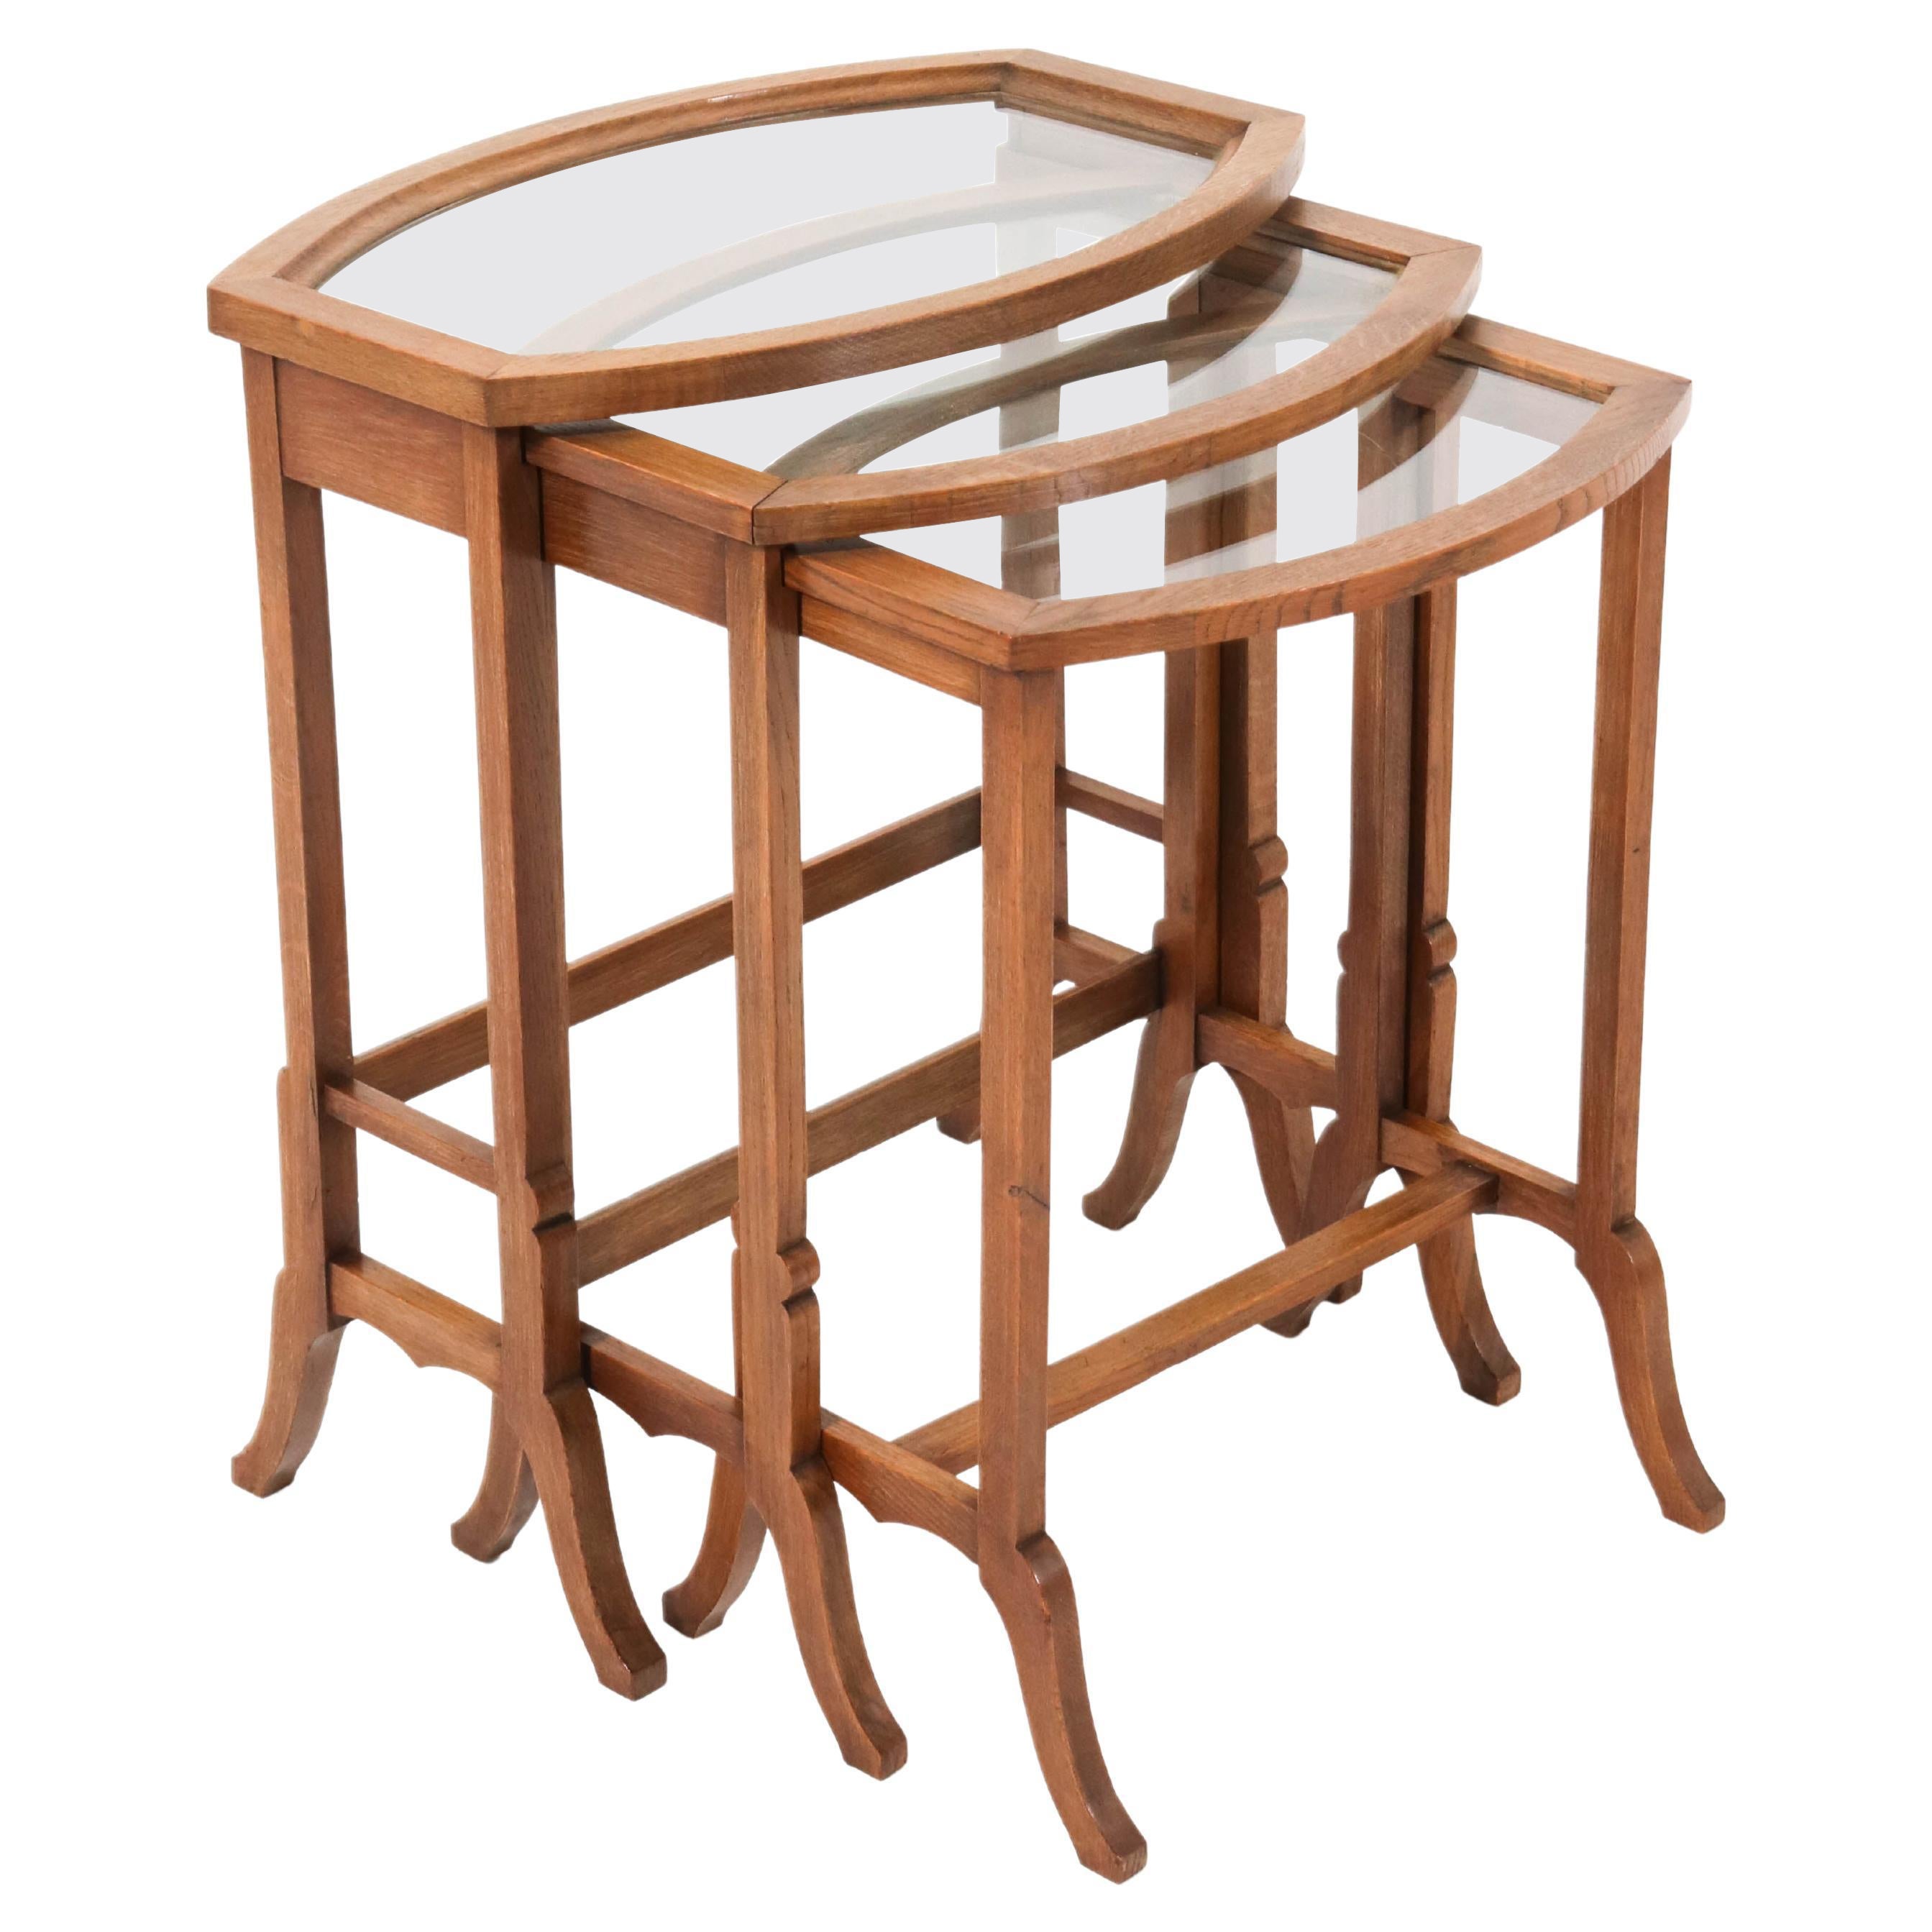 Oak Art Nouveau Nesting Tables with Glass Tops, 1900s